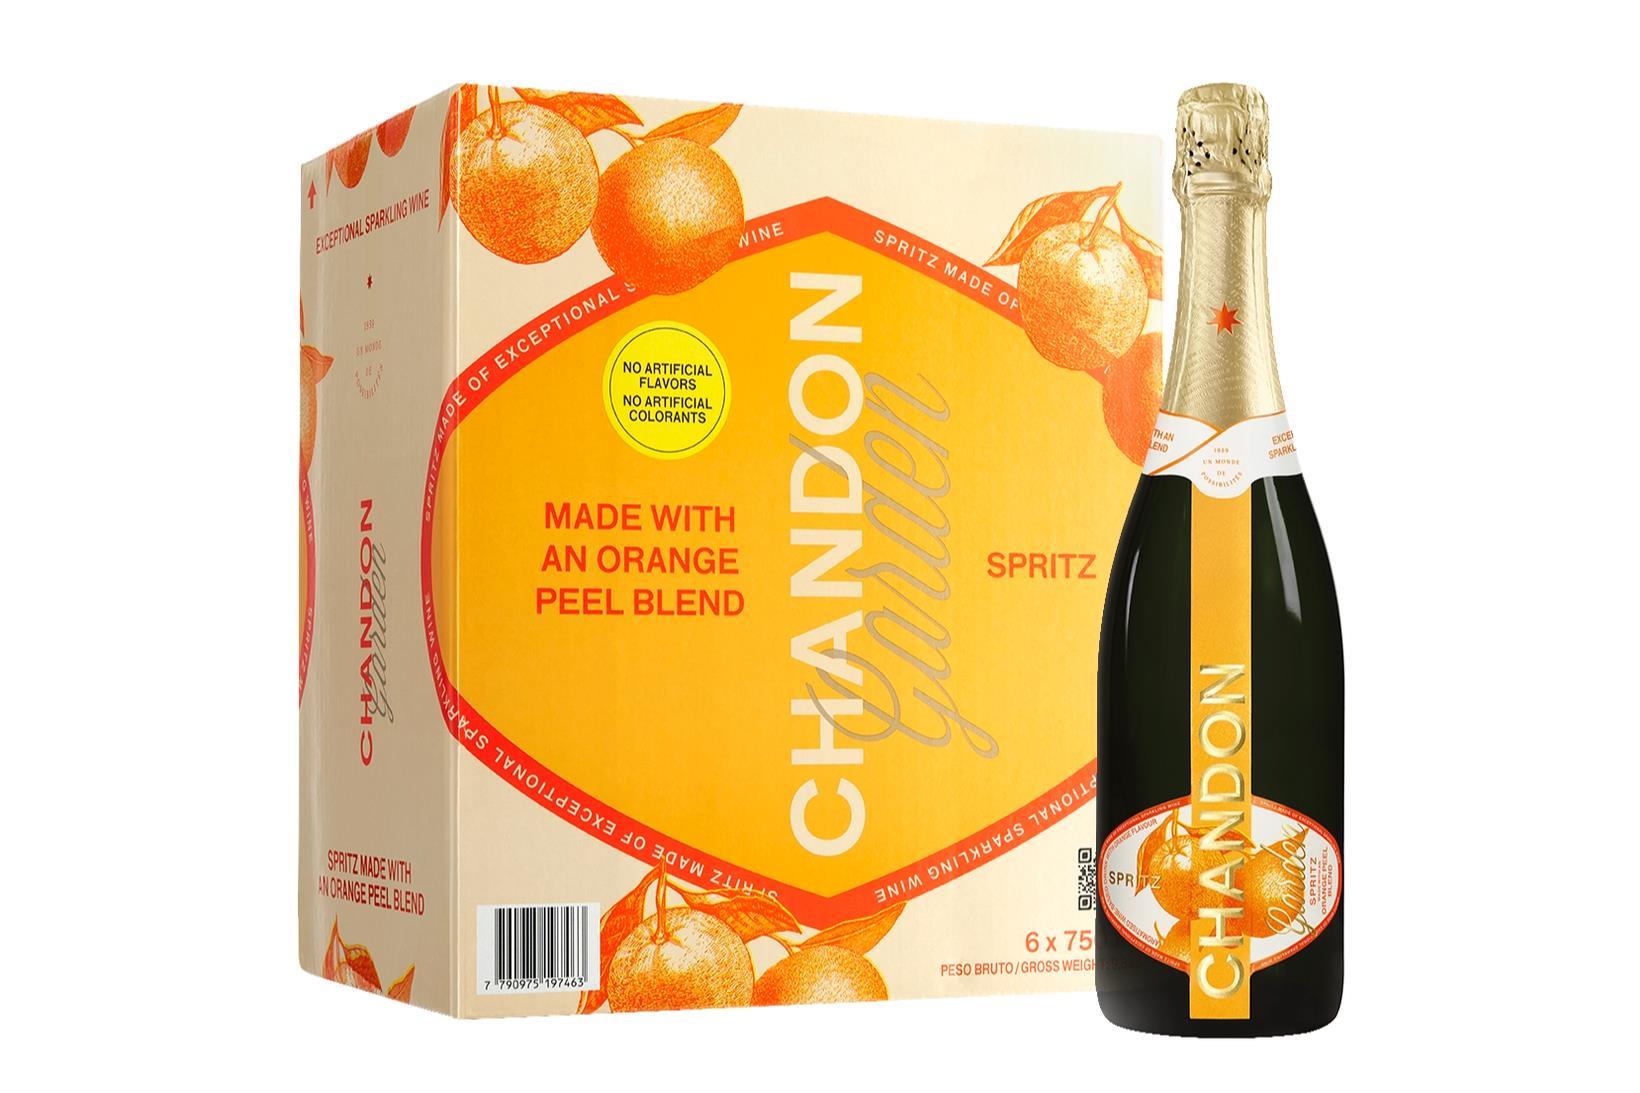 Chandon challenges Aperol with bitter orange Garden Spritz launch, News